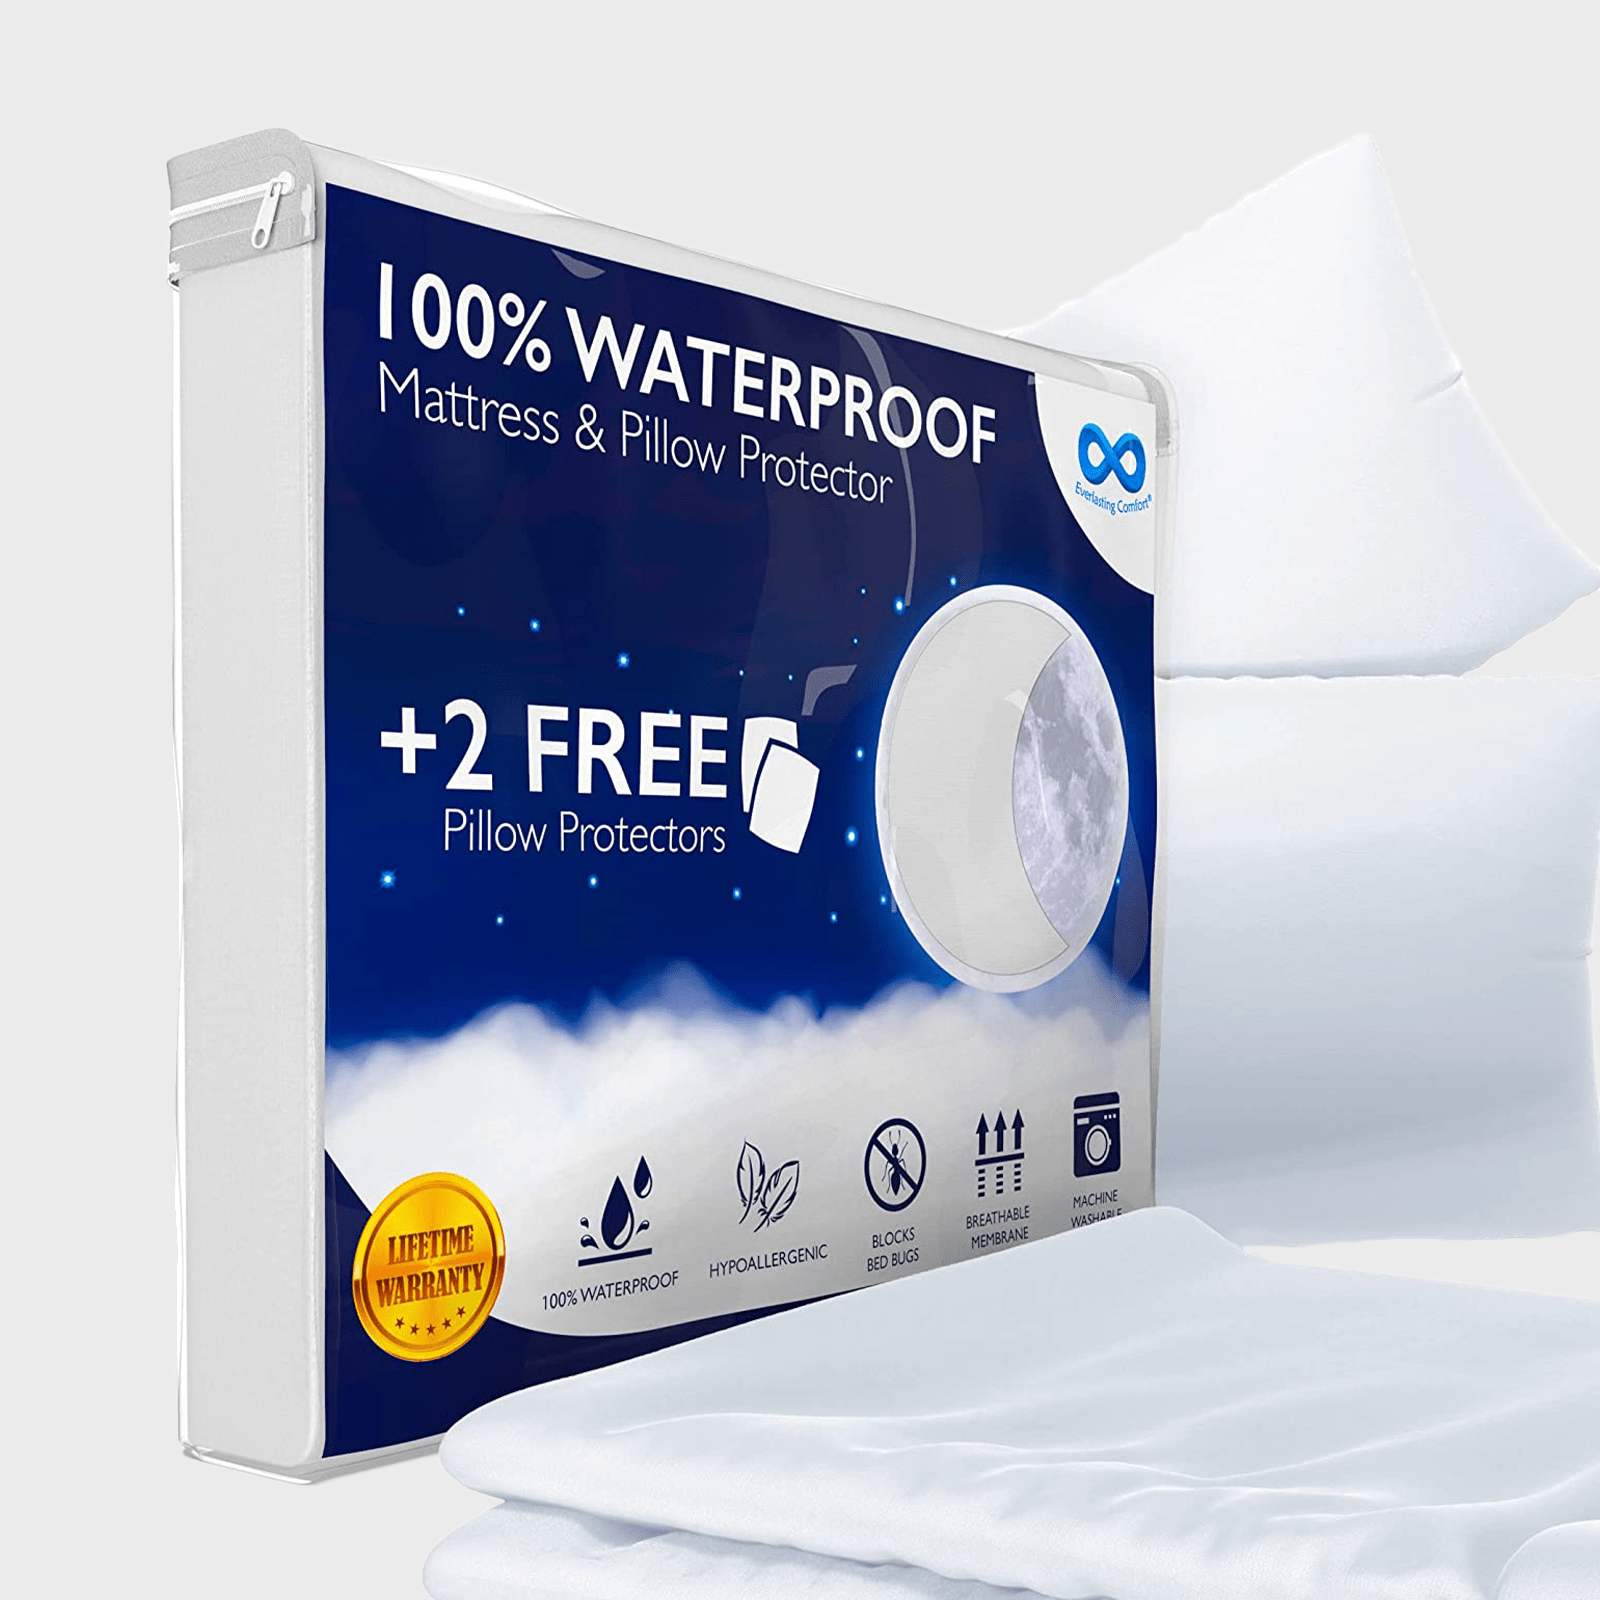 https://www.rd.com/wp-content/uploads/2022/07/everlasting-comfort-waterproof-queen-size-mattress-protector-ecomm-via-amazon.png?fit=700%2C700